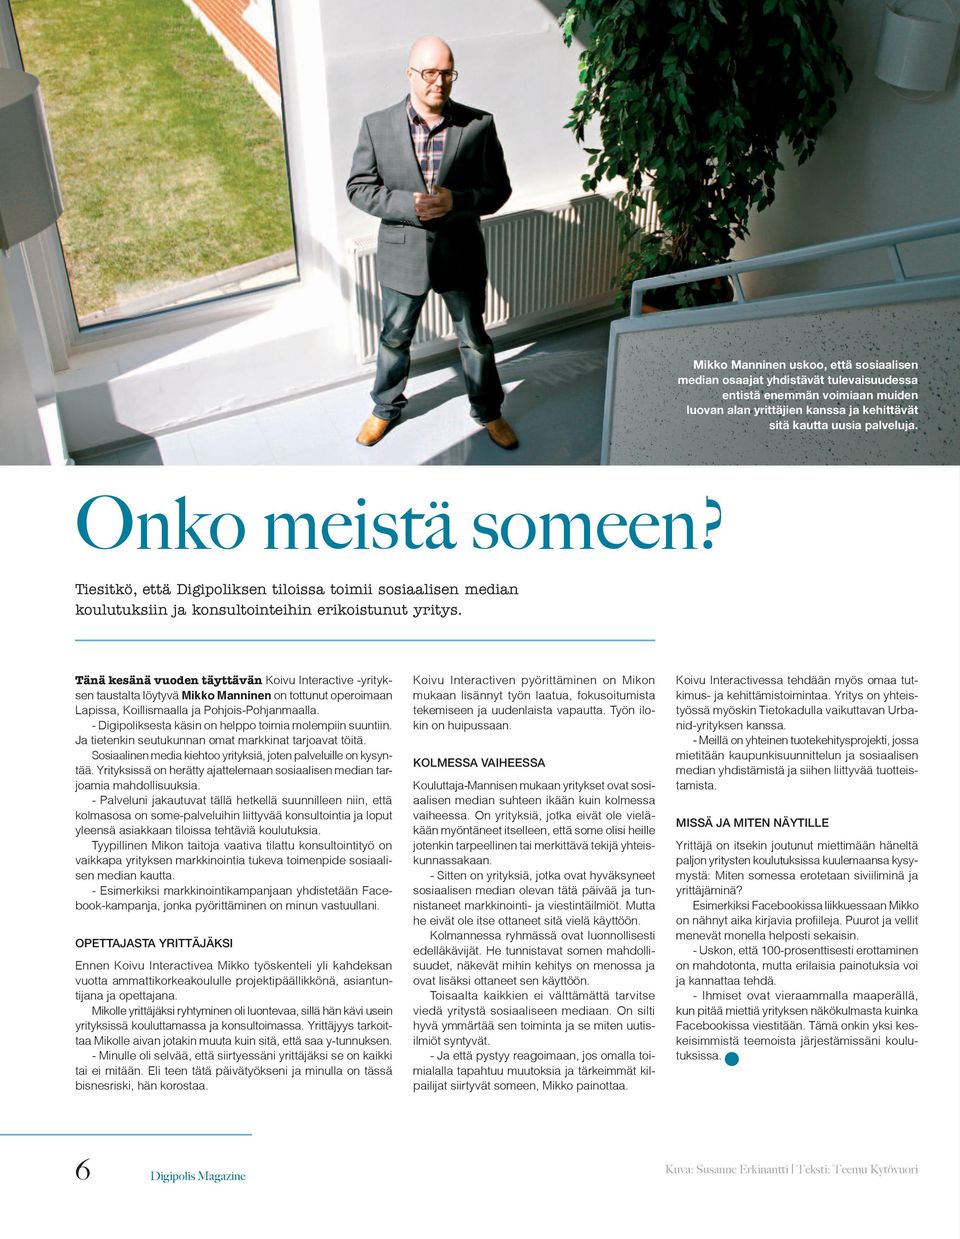 Tänä kesänä vuoden täyttävän Koivu Interactive -yrityksen taustalta löytyvä Mikko Manninen on tottunut operoimaan Lapissa, Koillismaalla ja Pohjois-Pohjanmaalla.